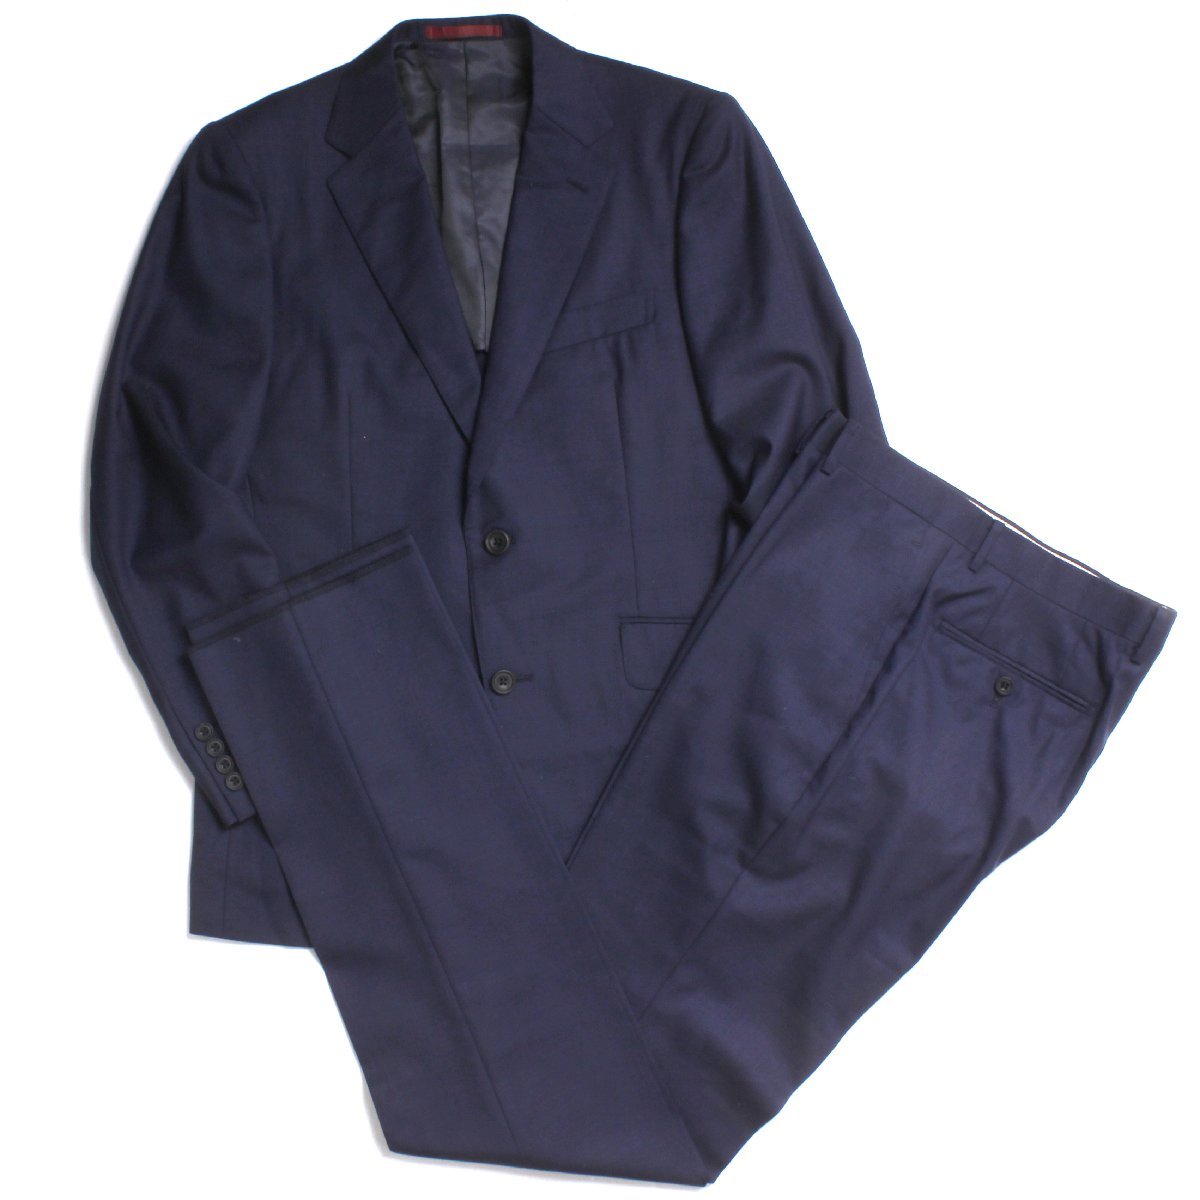 TimothyEverest スーツ size36L ネイビー 332C0032 ティモシー・エベレス テーラードジャケット/ノータックパンツ セットアップ